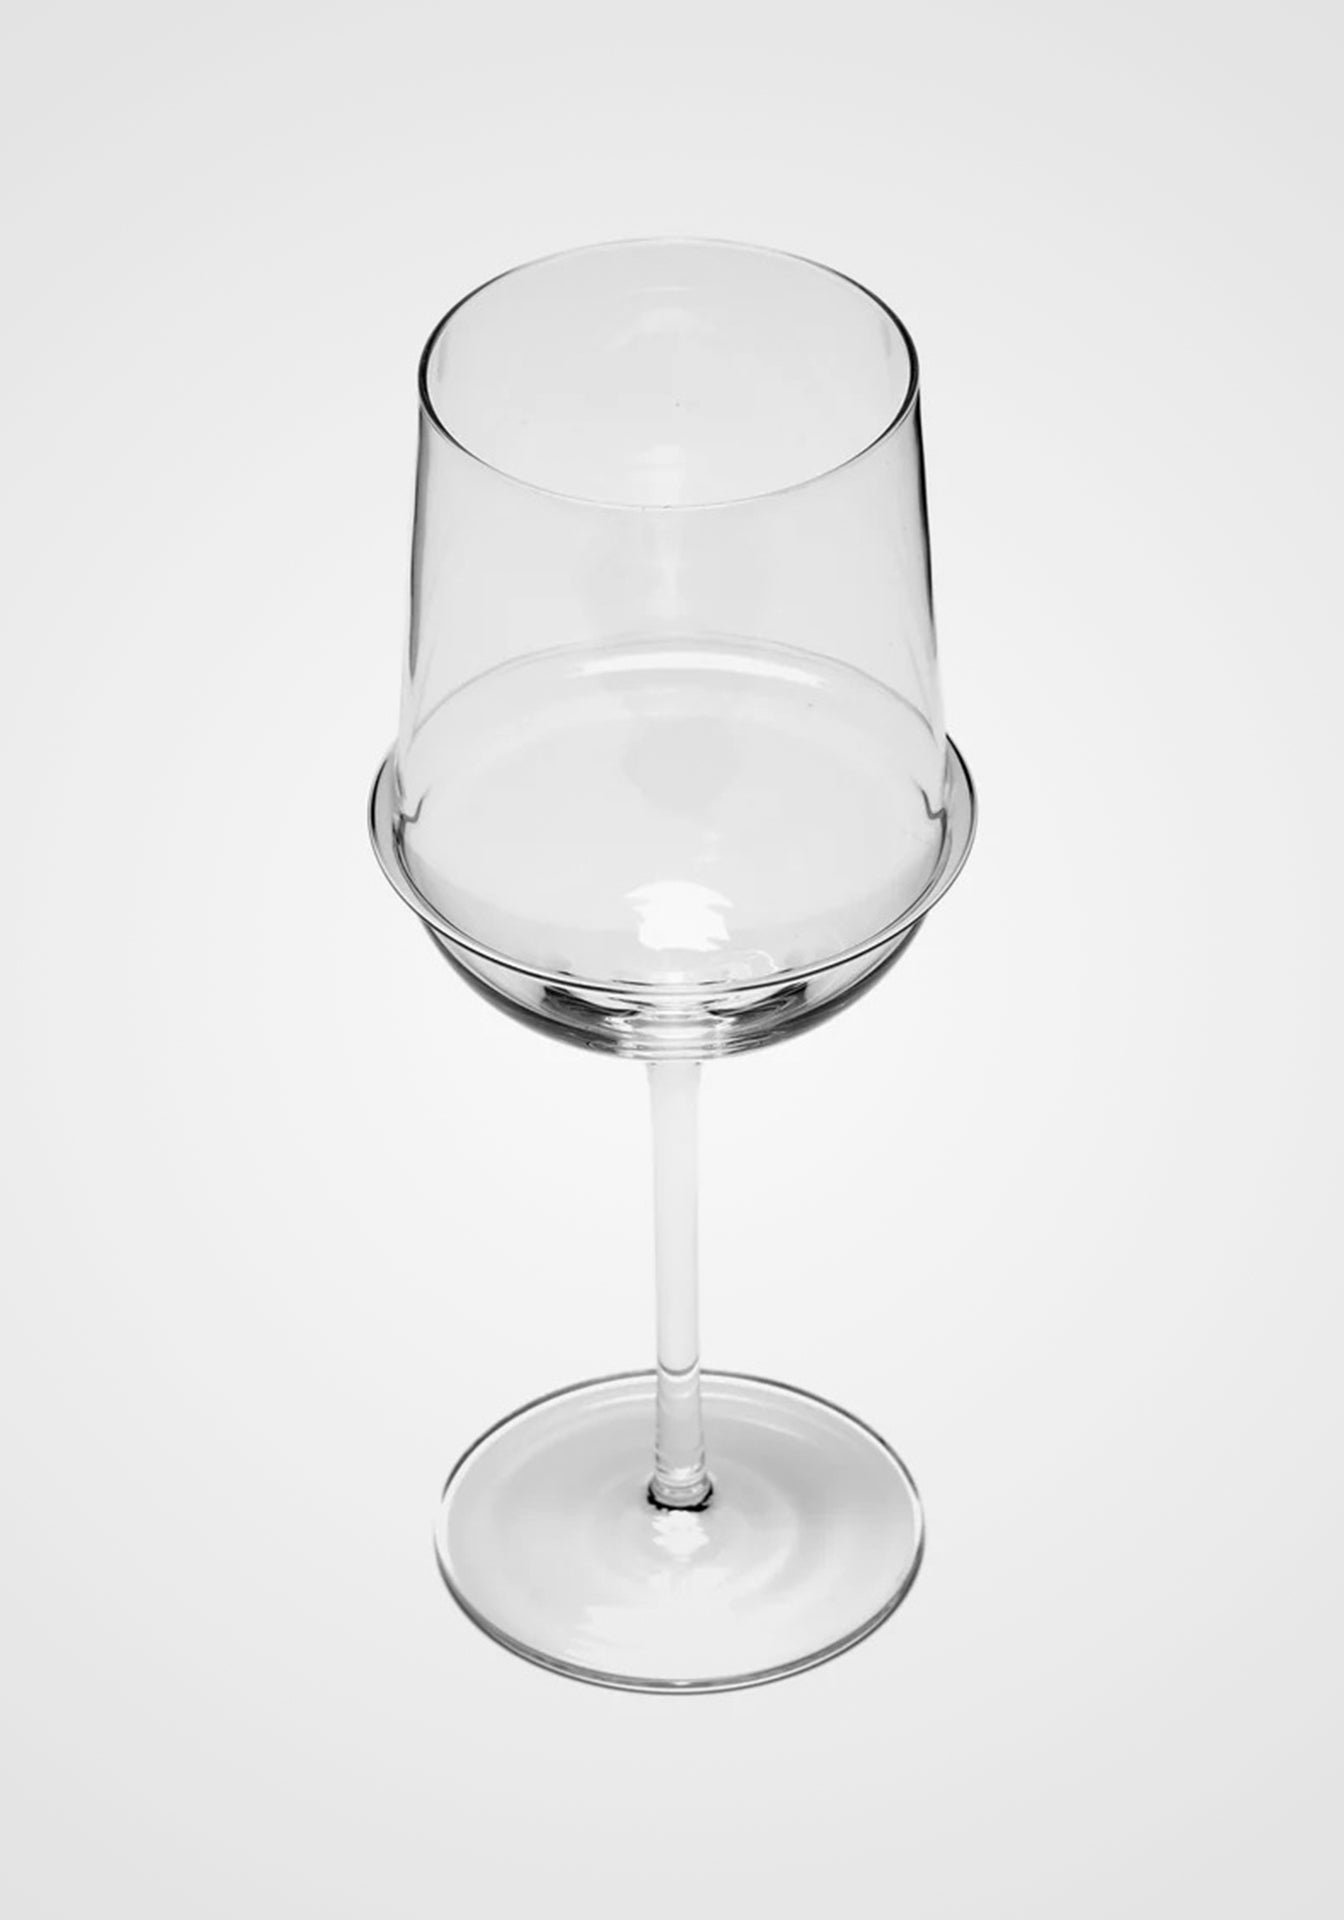 Kelly Wearstler Dune White Wine Glass, Set of 4